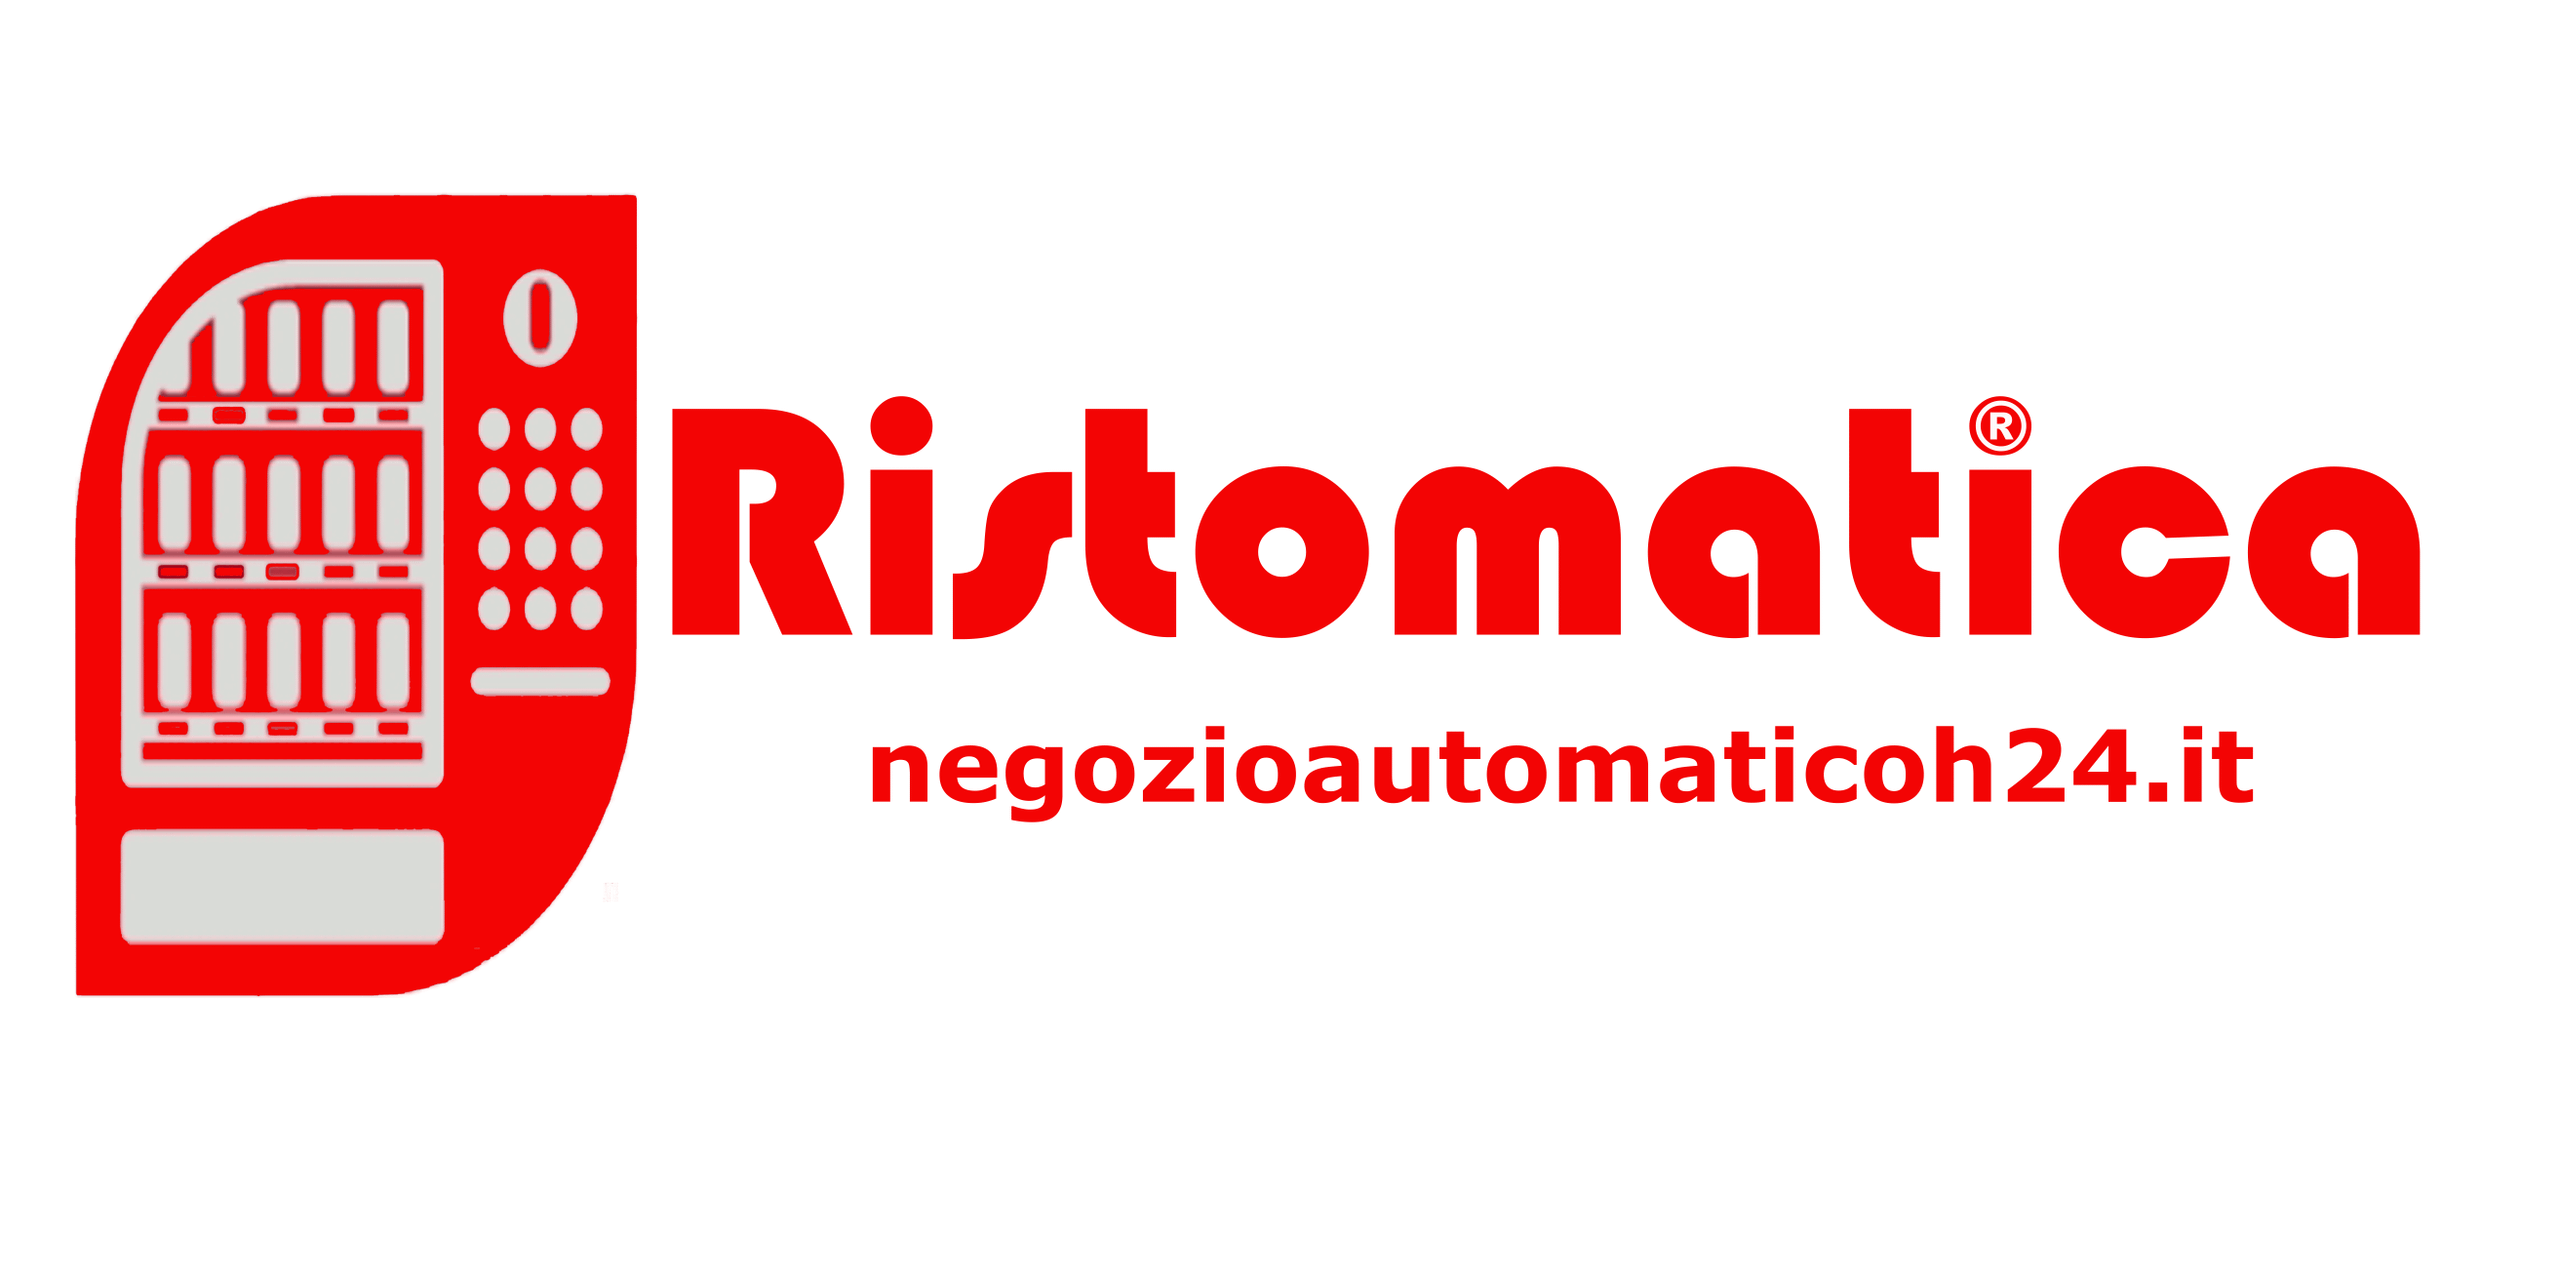 NegozioAutomaticoh24.it